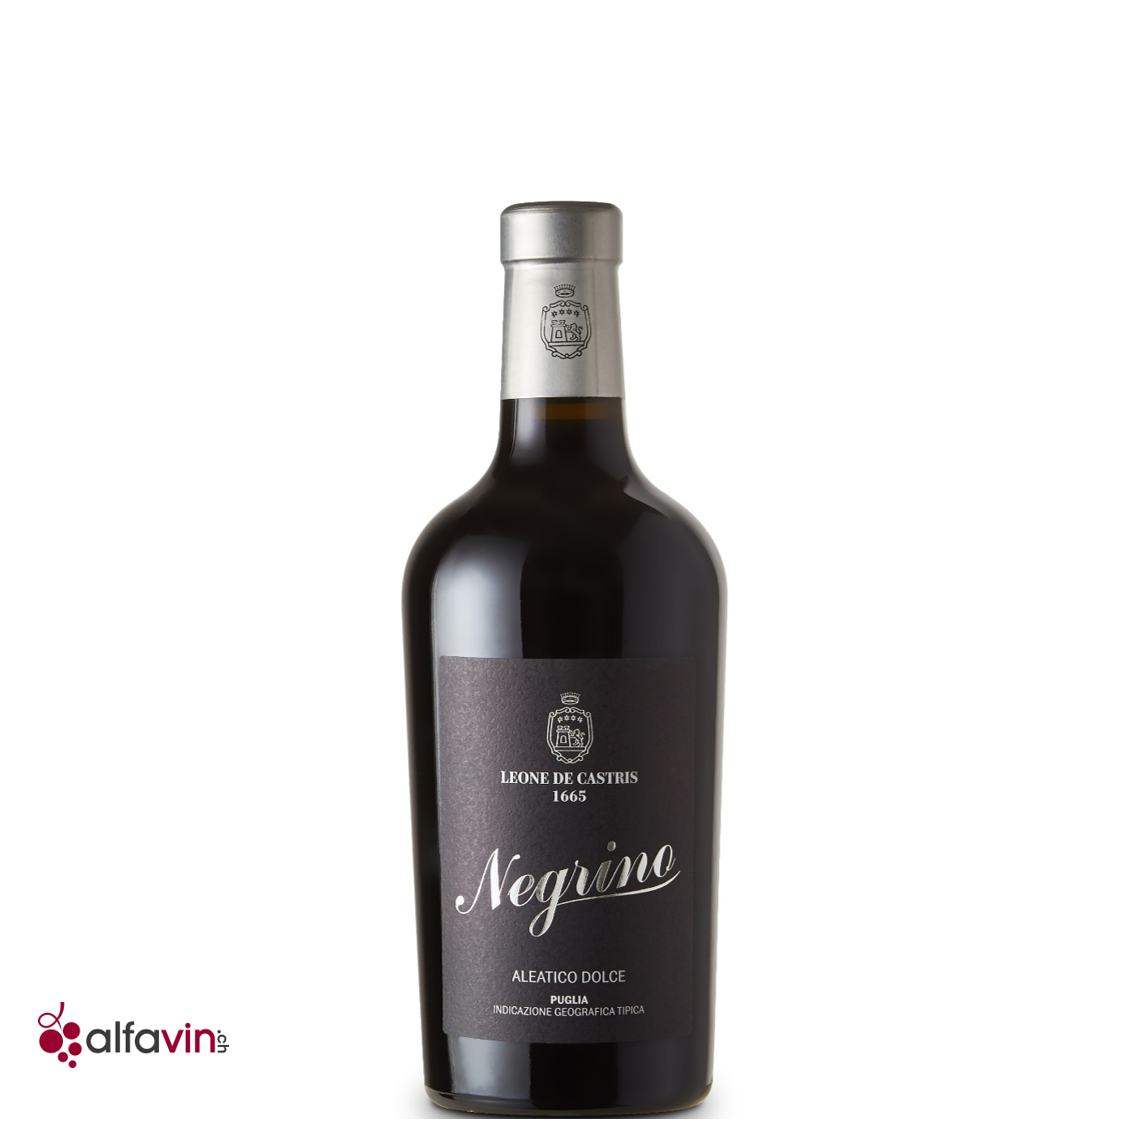 Negrino 2018 - Süsser Rotwein Italien aus